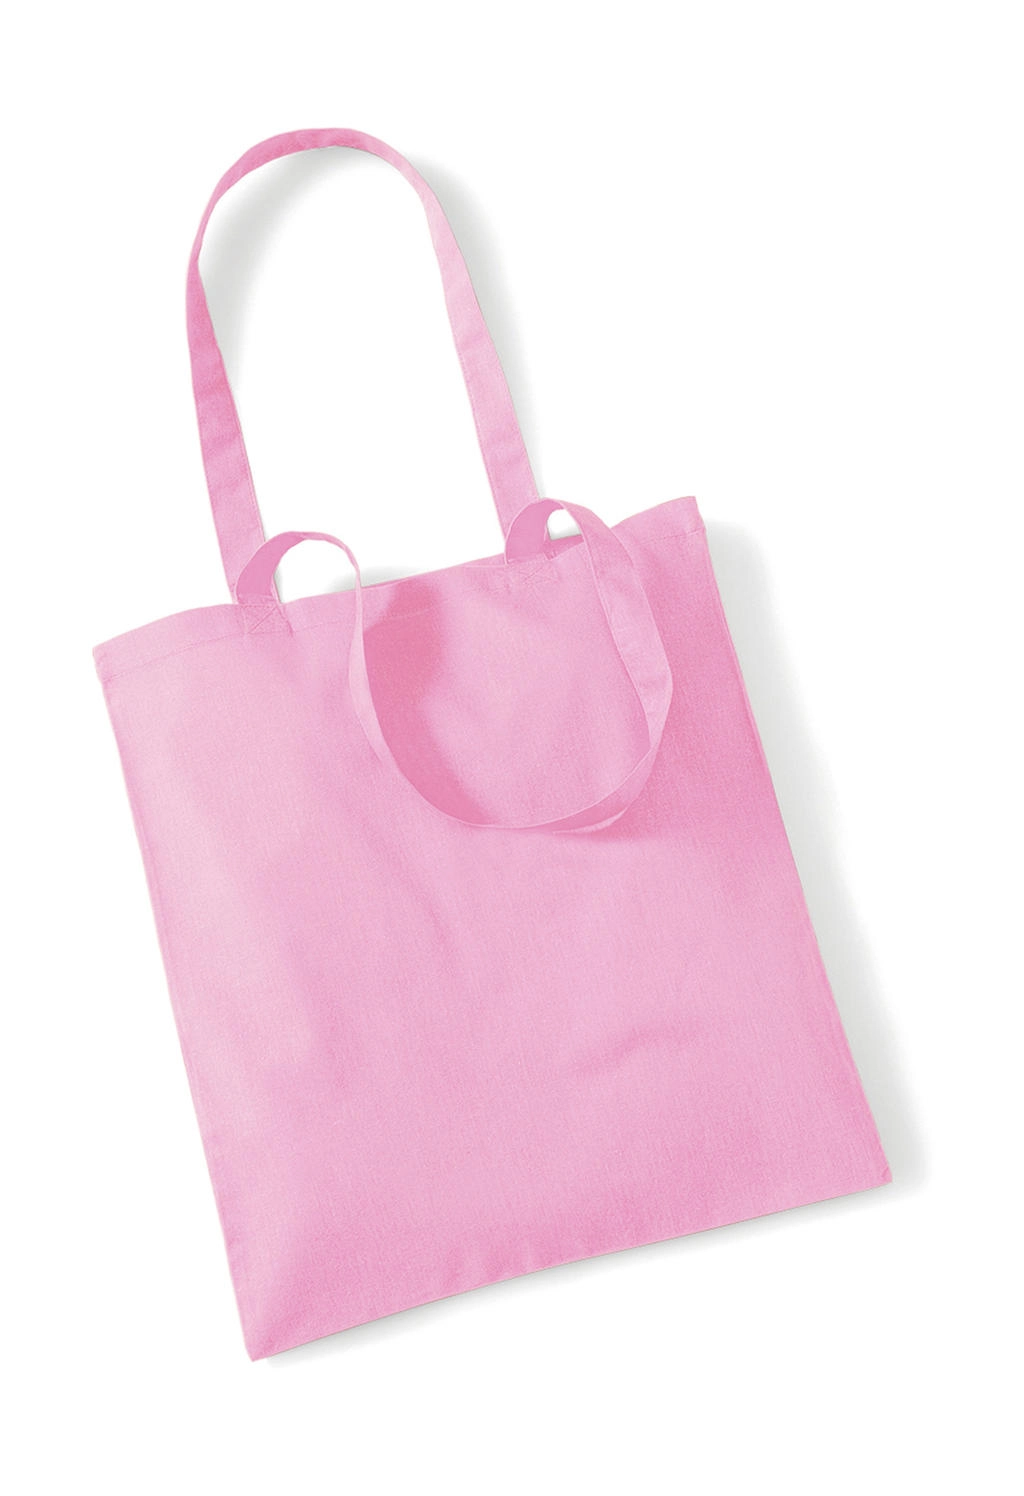 Bag for Life - Long Handles zum Besticken und Bedrucken in der Farbe Classic Pink mit Ihren Logo, Schriftzug oder Motiv.